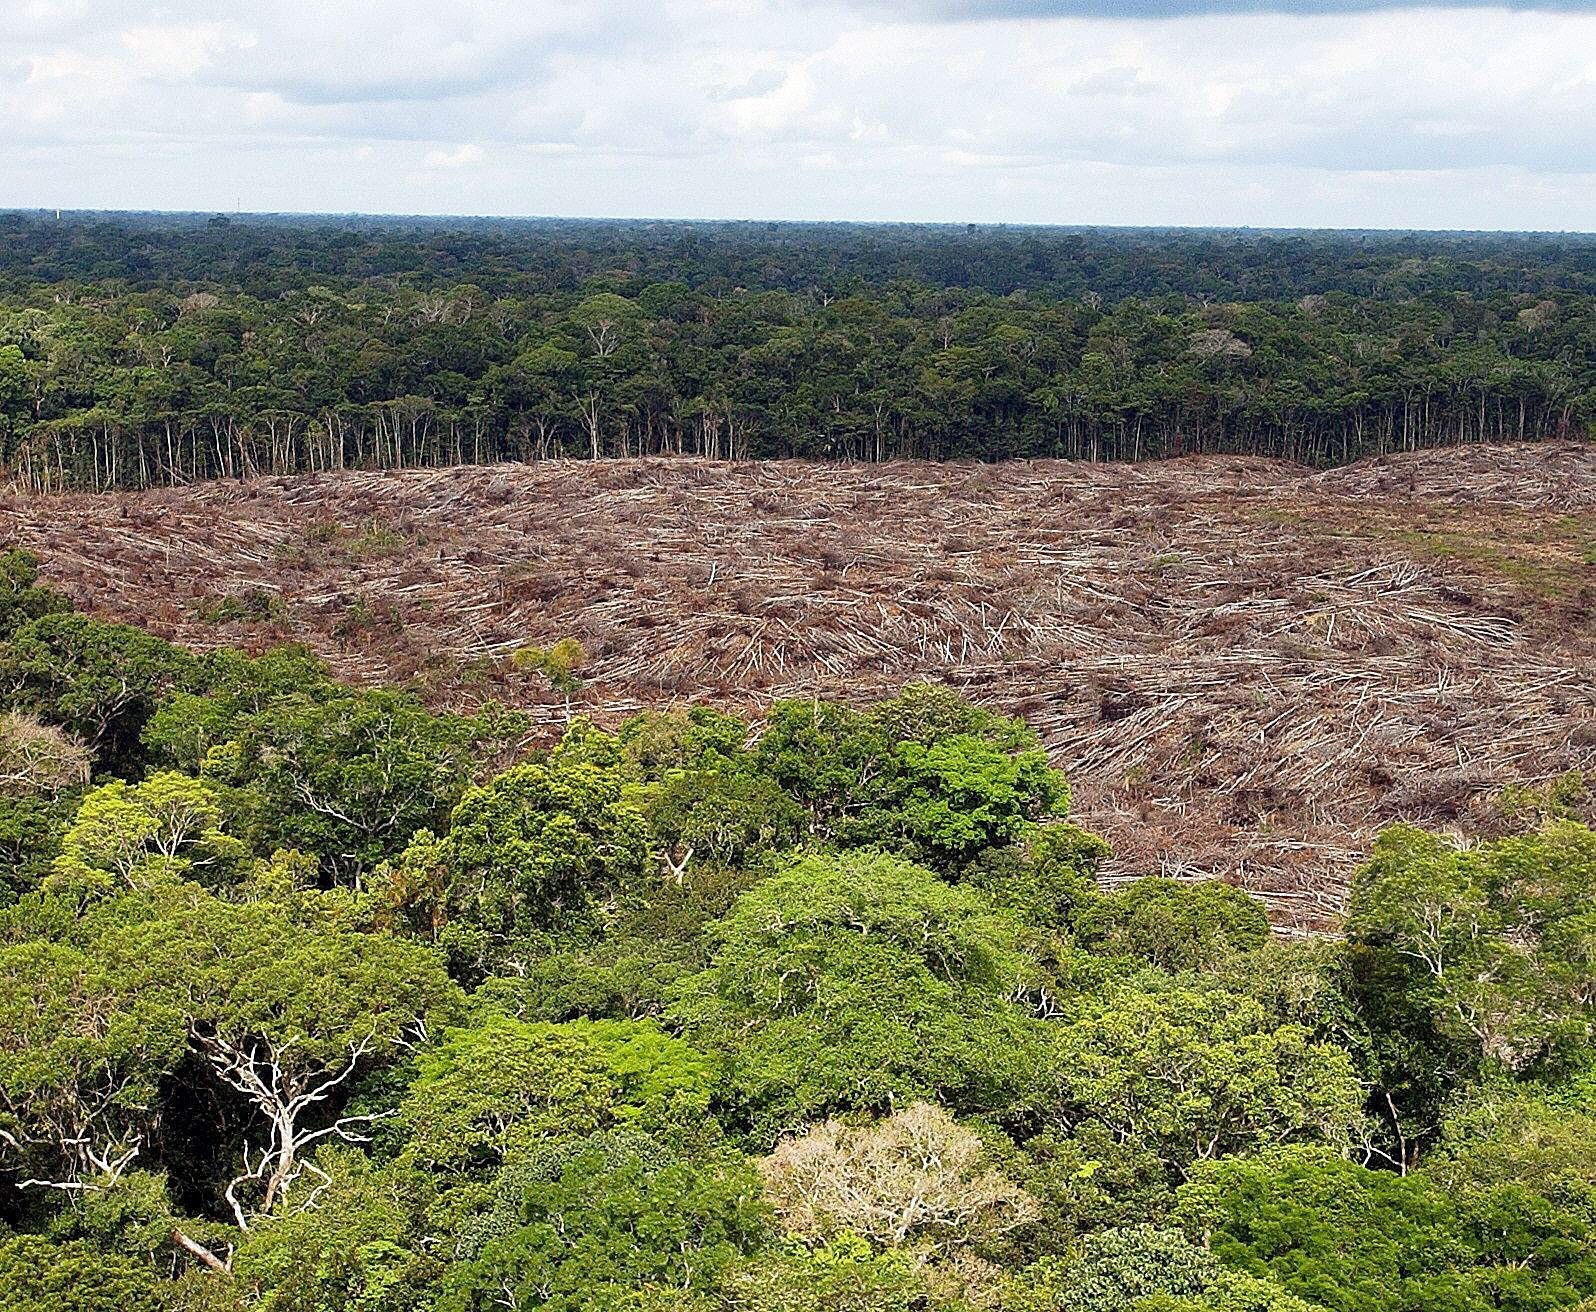 Vista de árboles talados en la selva amazónica de Brasil, en una fotografía de archivo (Foto: EFE/Marcelo Sayao)
